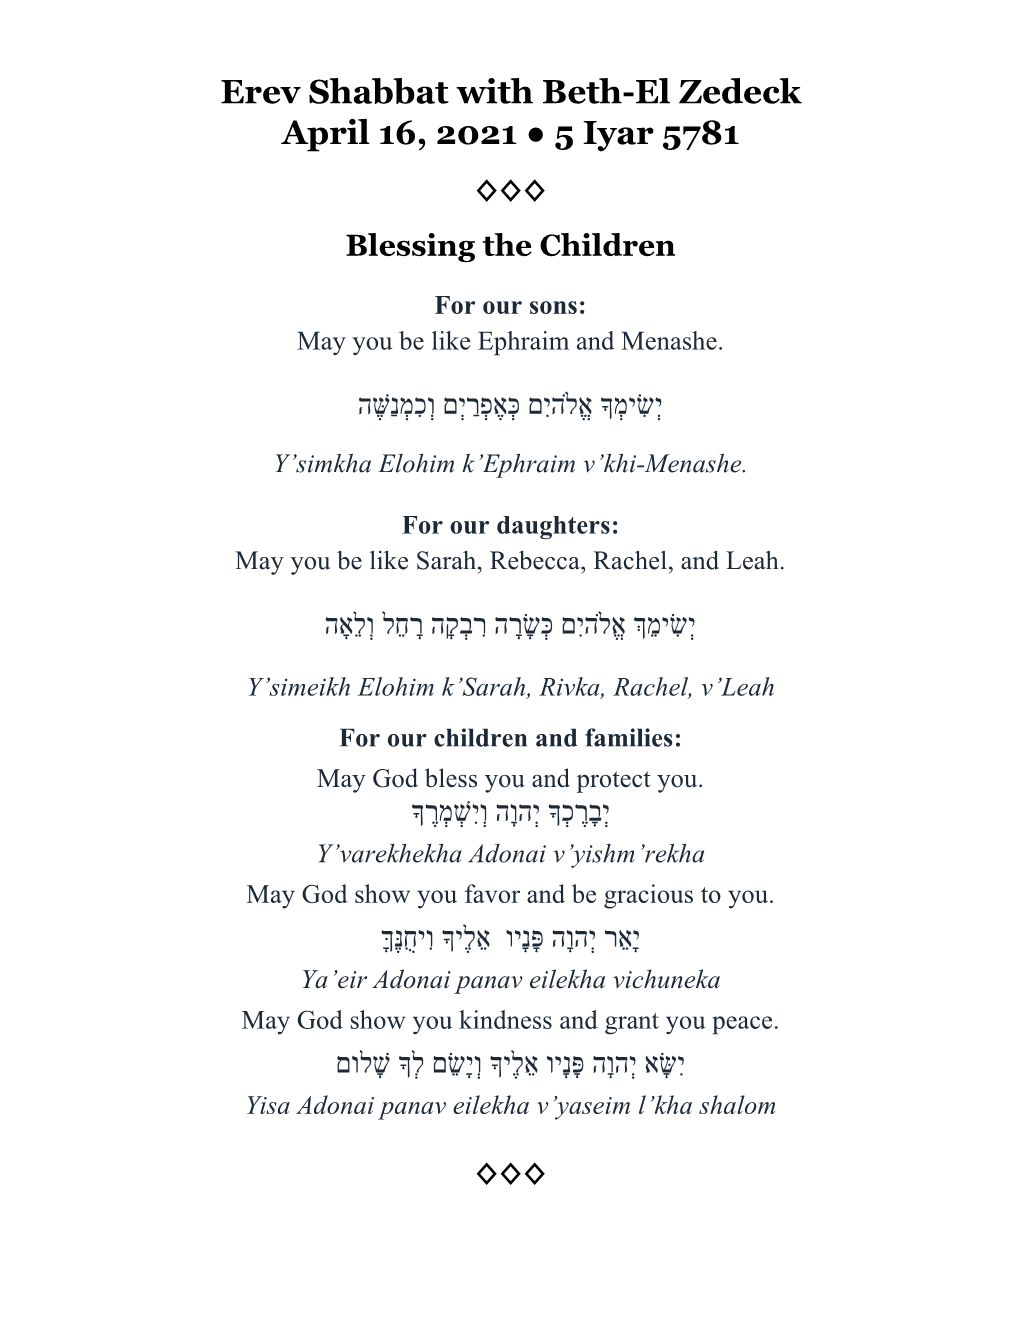 Erev Shabbat with Beth-El Zedeck April 16, 2021 5 Iyar 5781